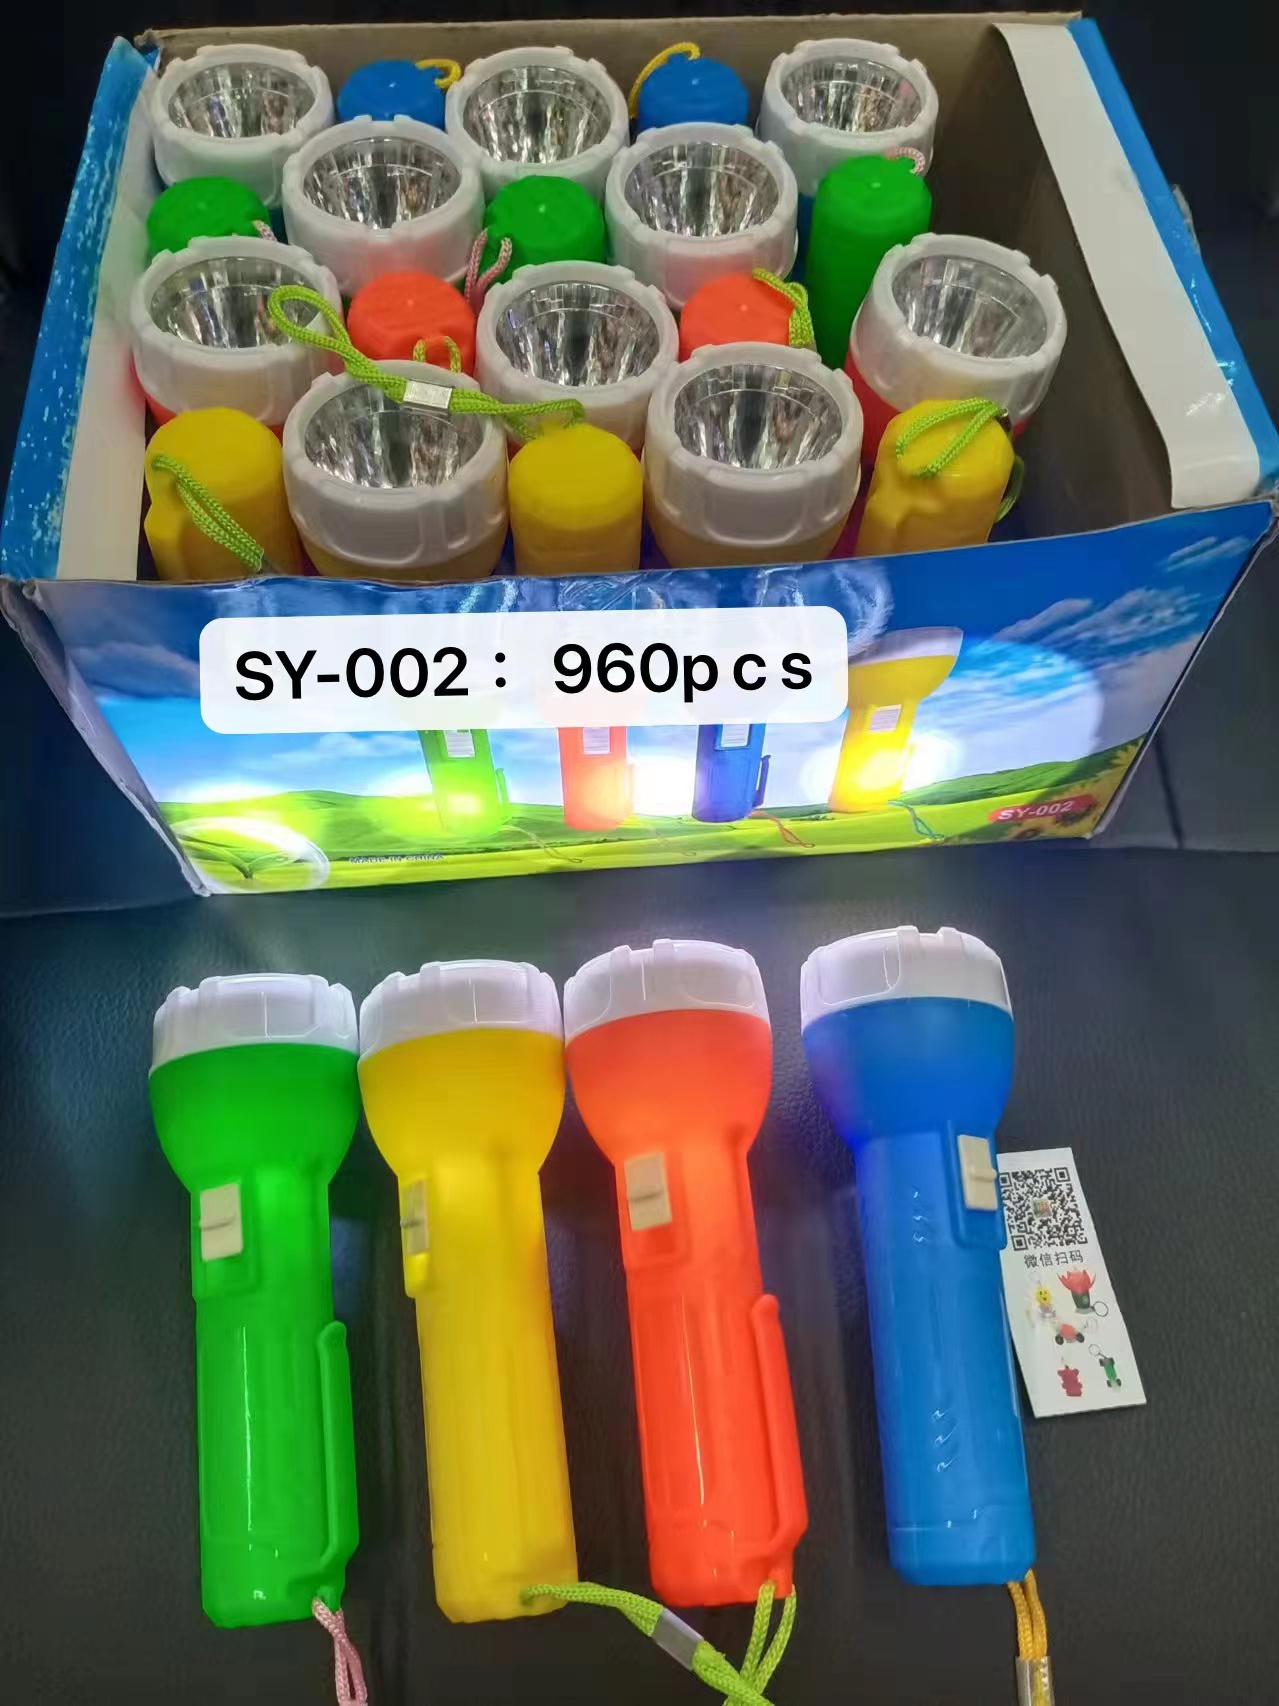 白光手电筒 LED手电筒 塑料纽扣电池手电筒SY-002款详情图1